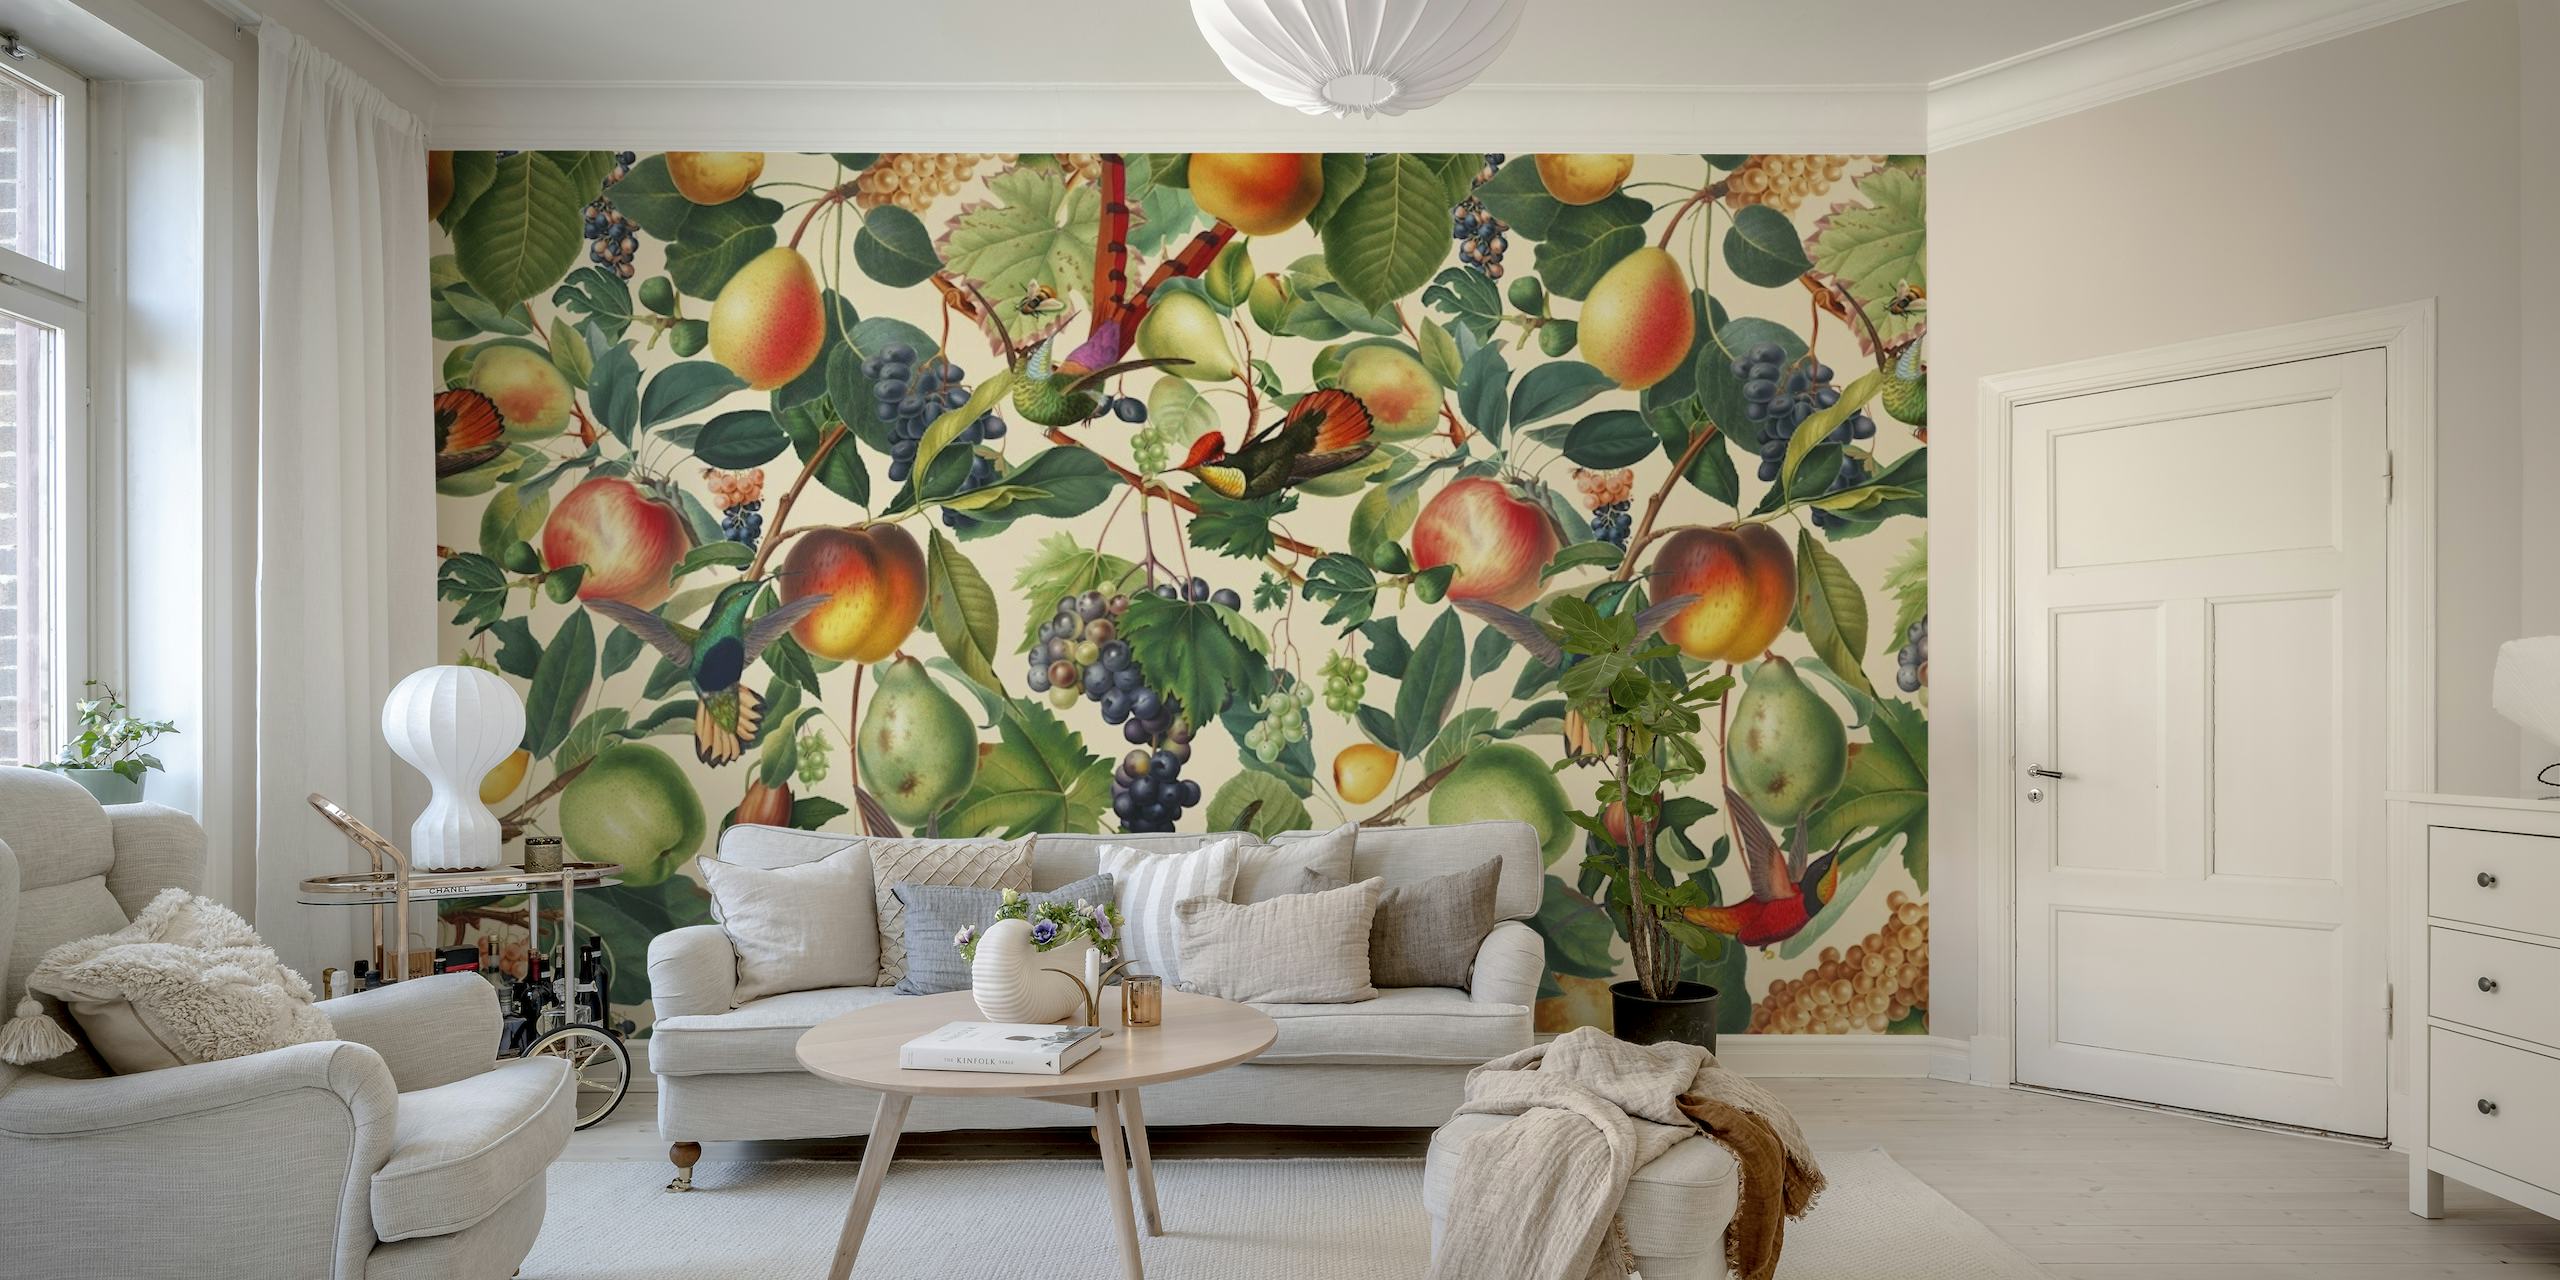 Väggmålning med sommartema med en mängd olika frukter som persikor och vindruvor bland gröna lövmönster